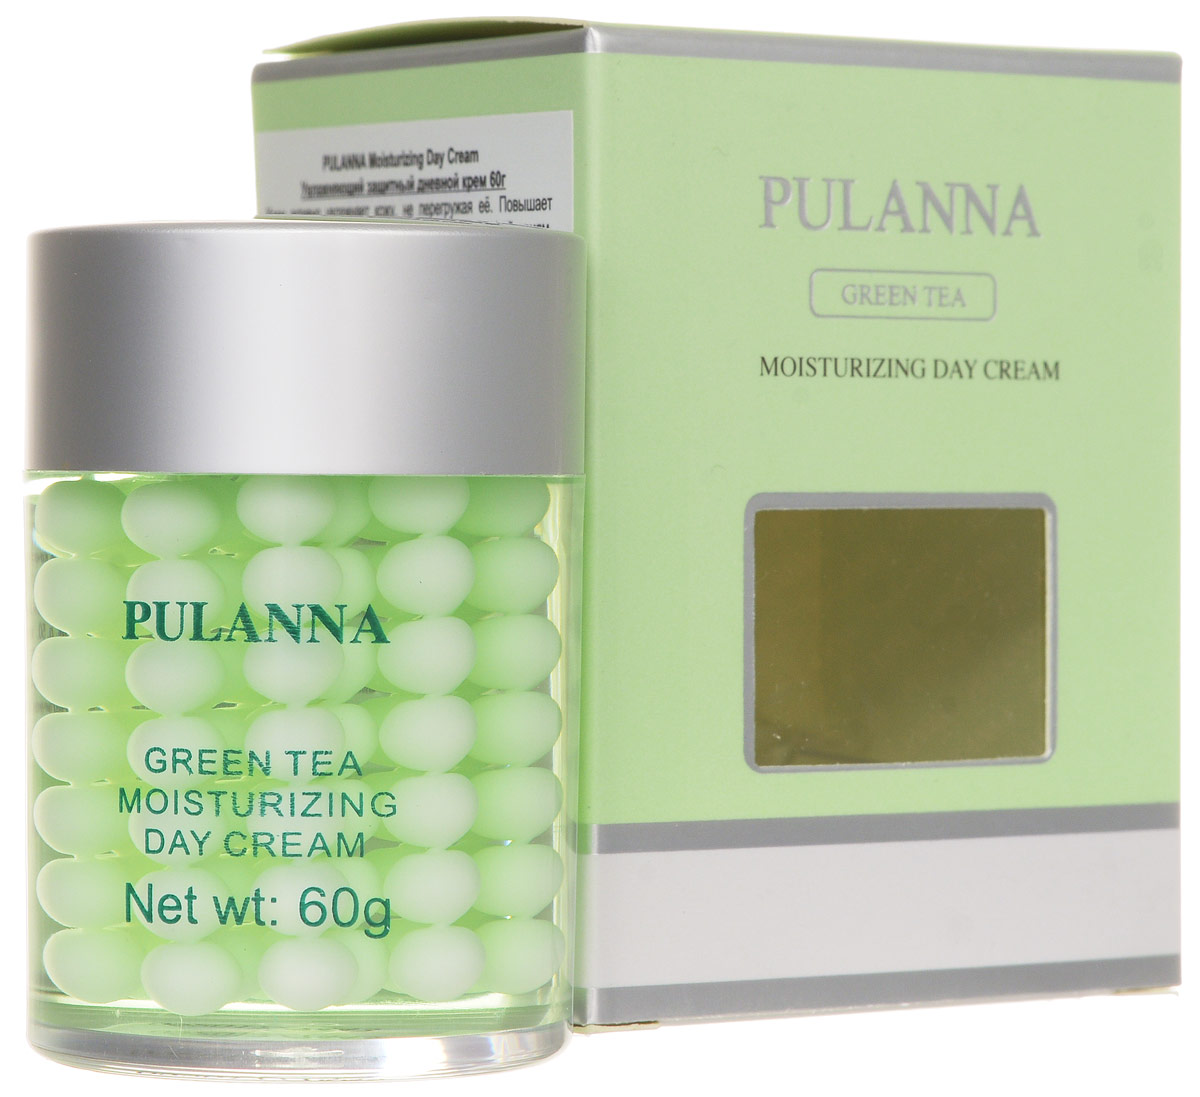 заказать и купить Pulanna Увлажняющий защитный дневной крем на основе зеленого чая-Moisturizing Day Cream 60 г